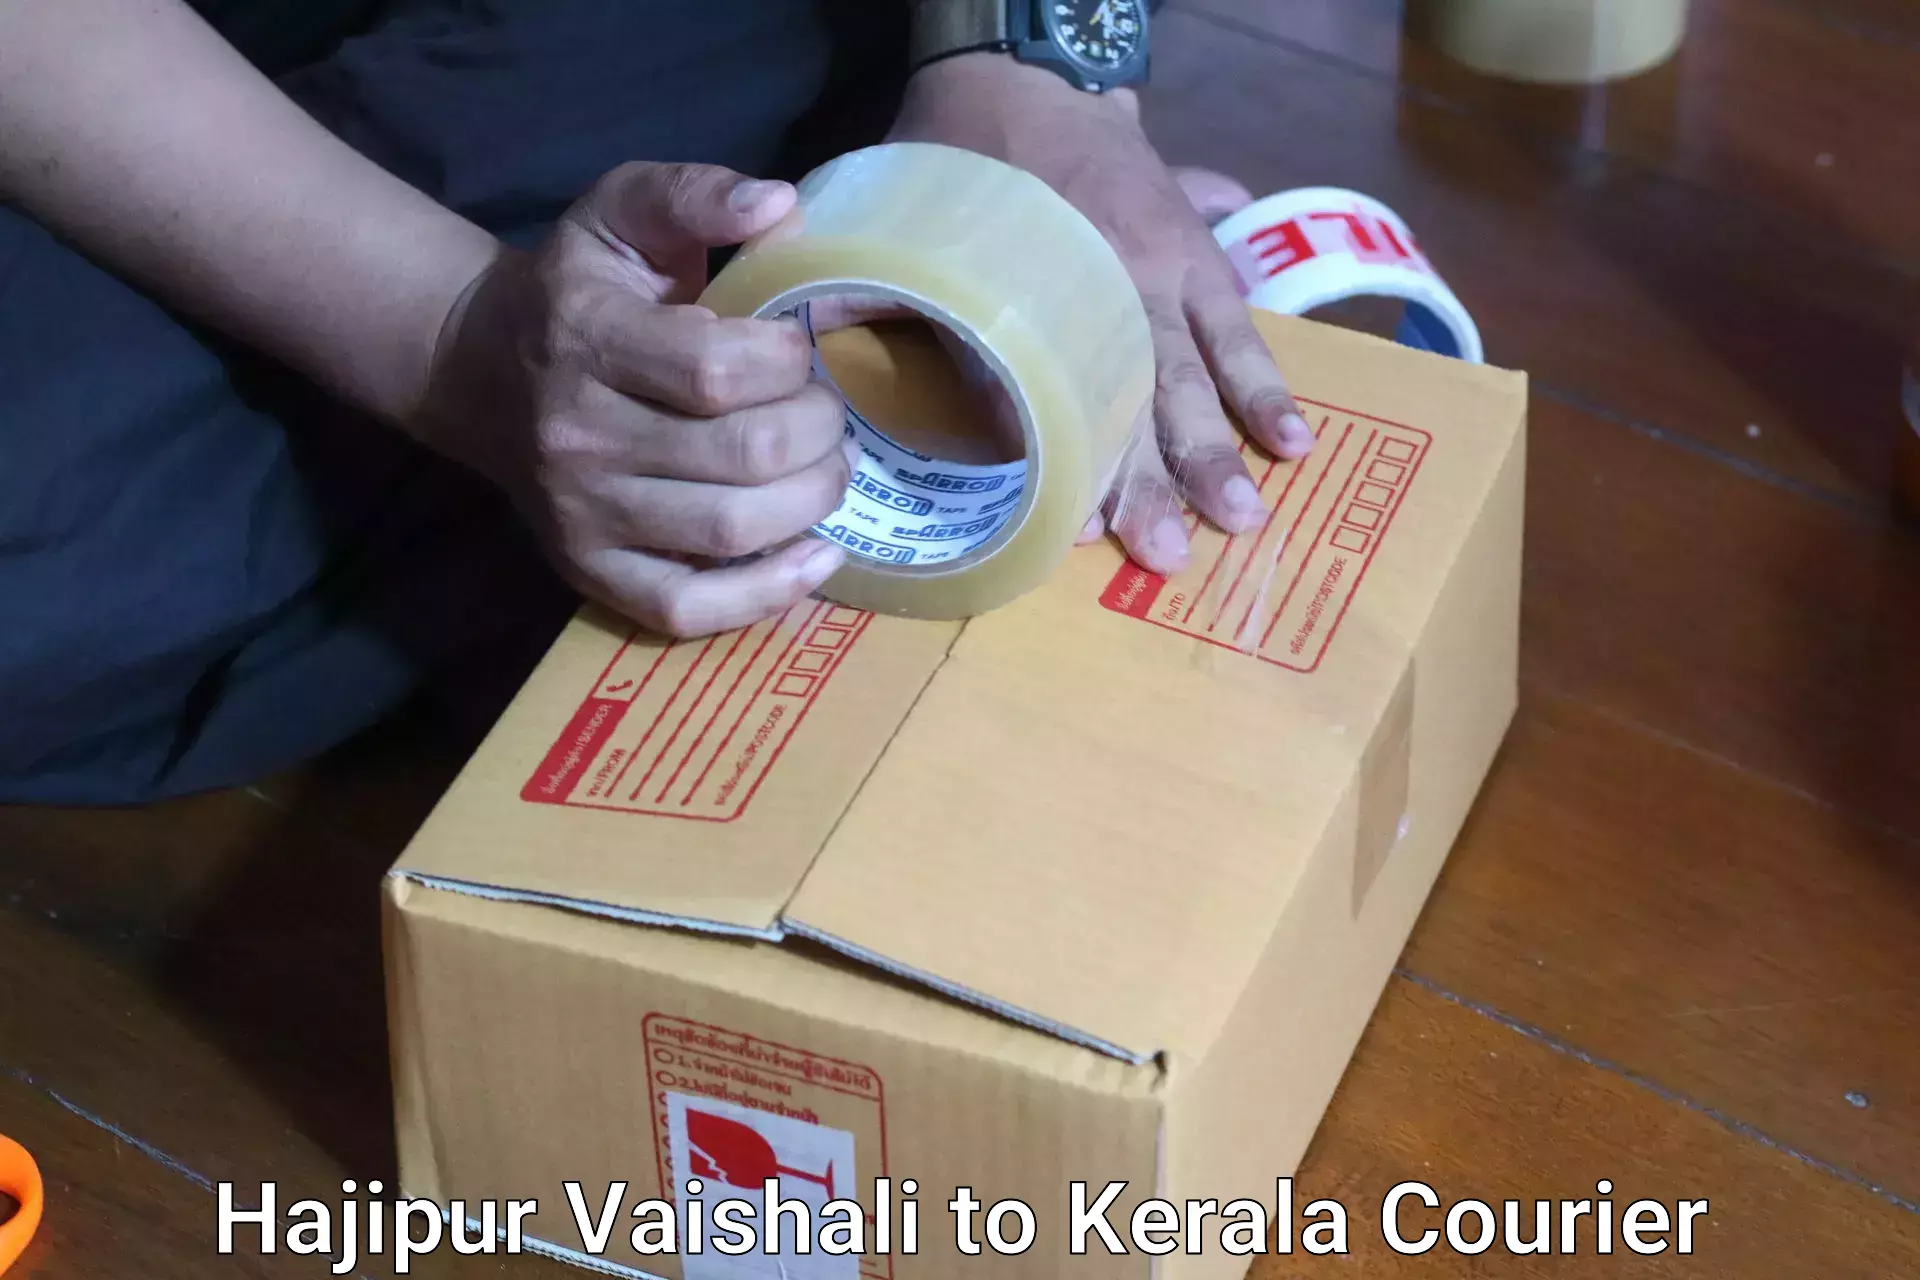 Airport luggage delivery Hajipur Vaishali to Kerala